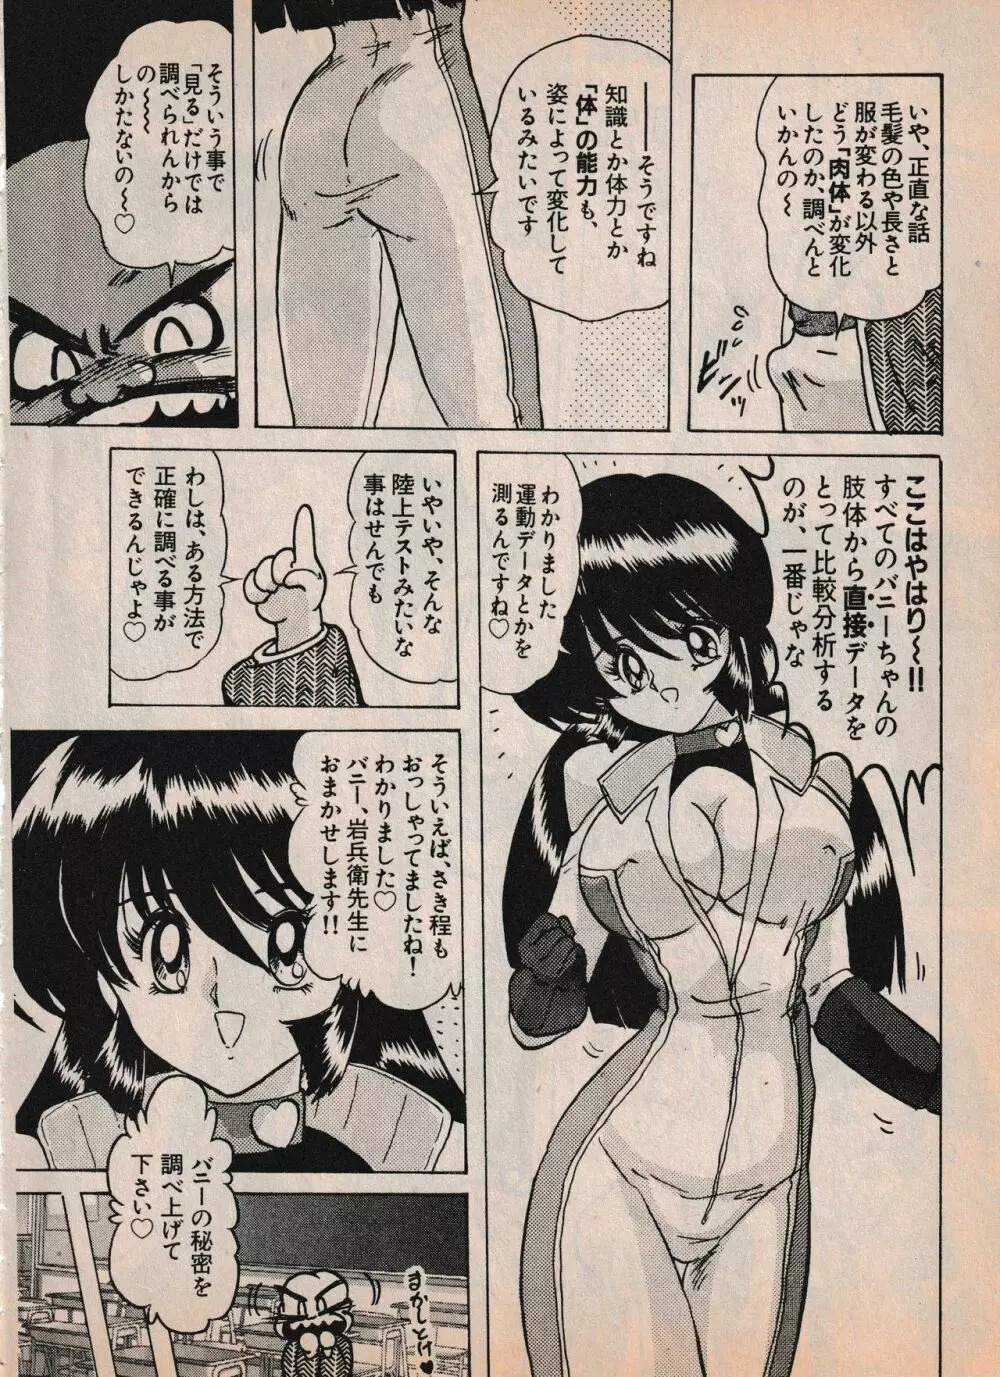 Sailor X vol. 4 – Sailor X vs. Cunty Horny! 21ページ